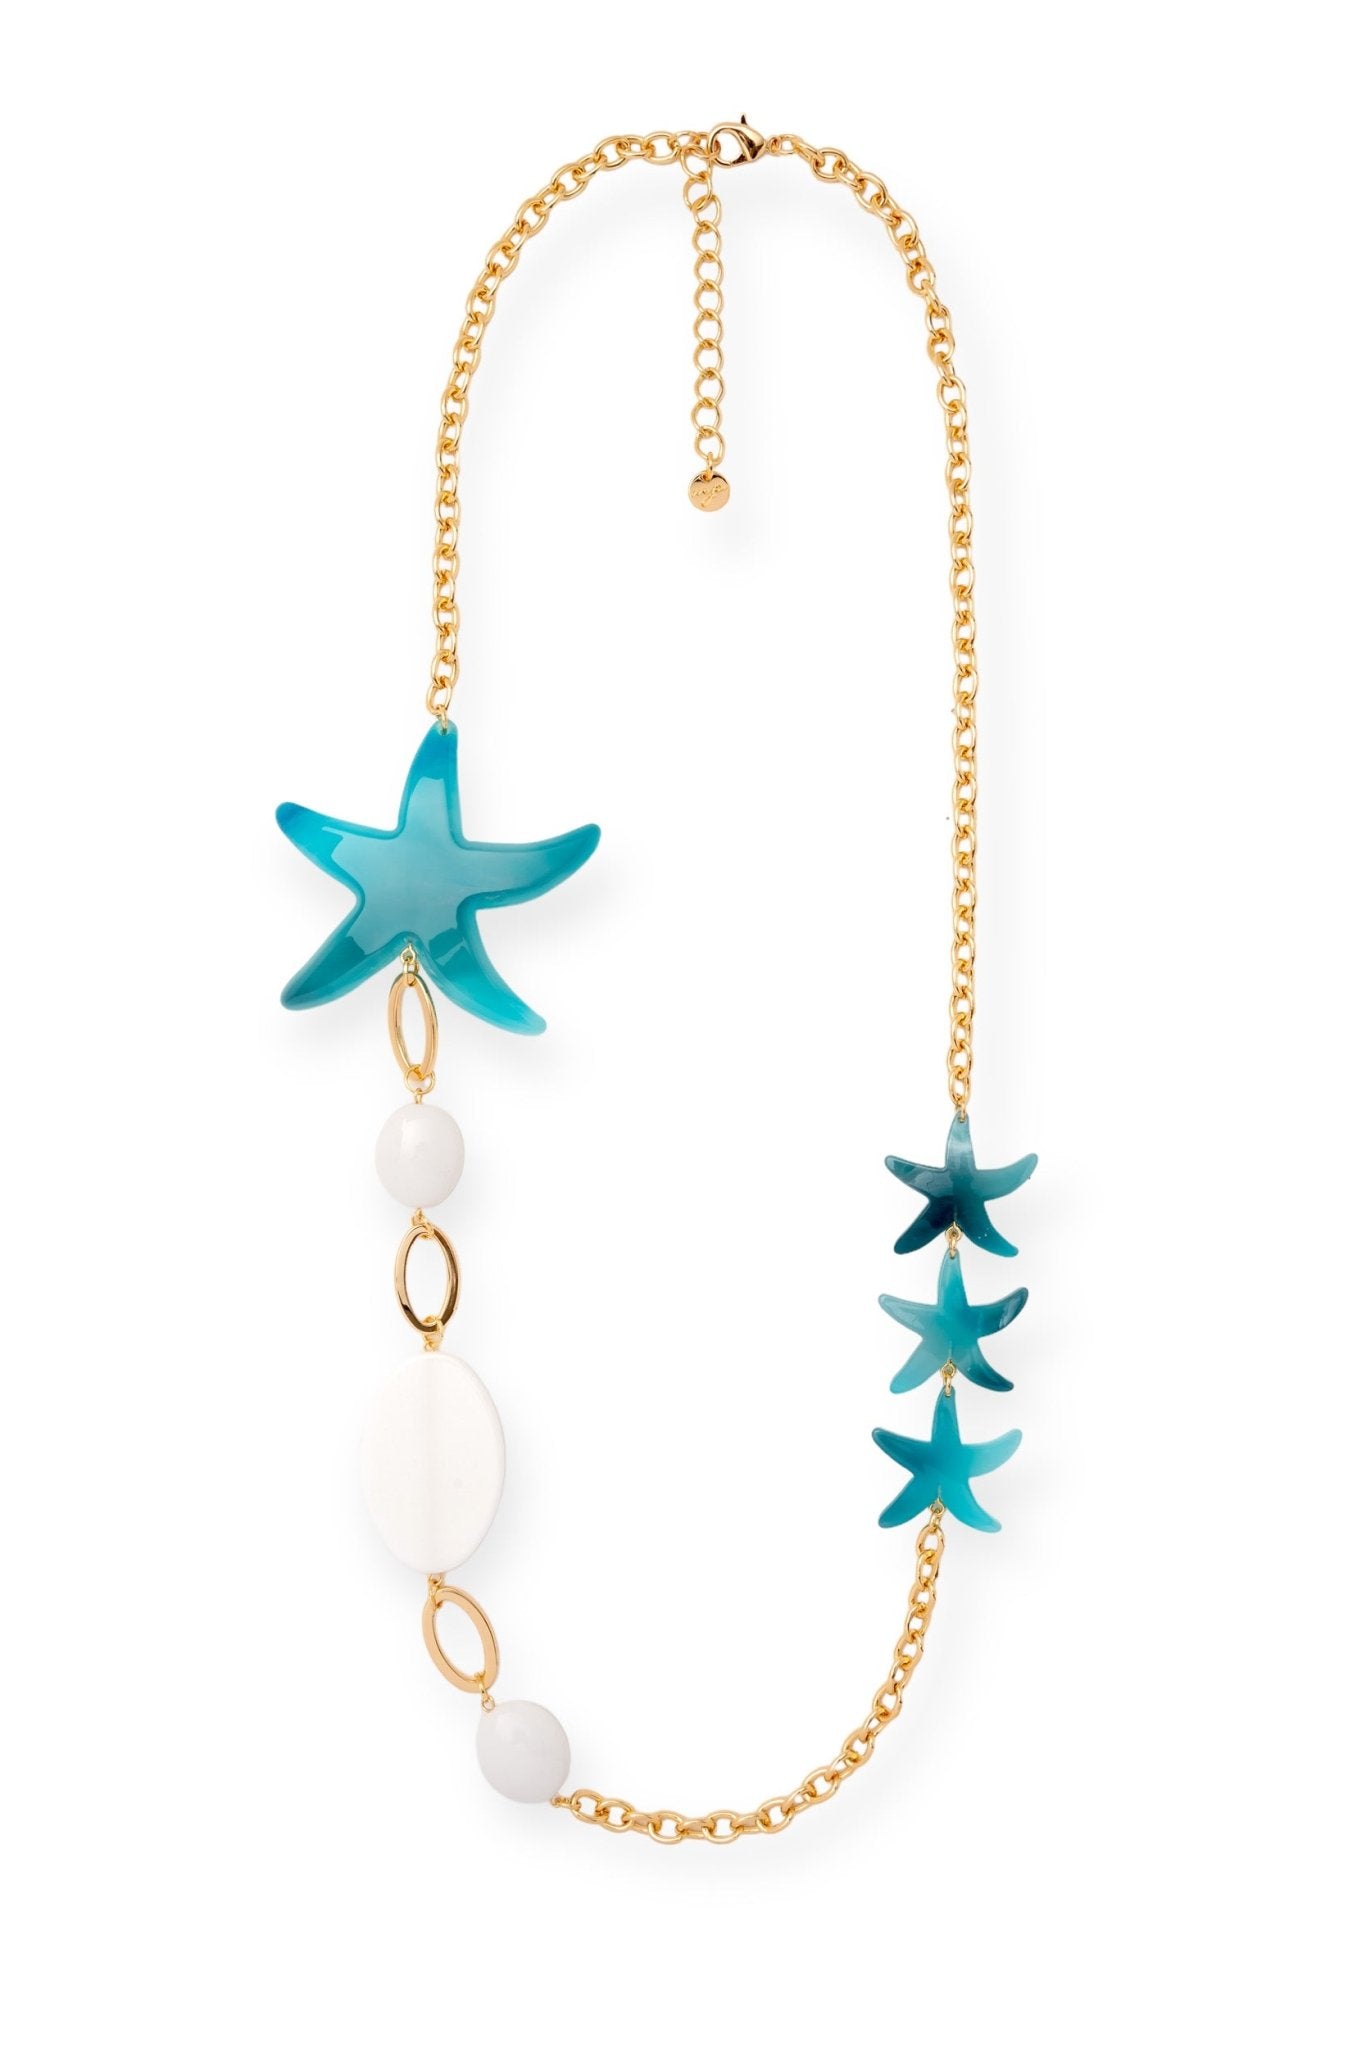 Collana lunga con inserti a forma di stella marina dai toni azzurri - Mya Accessories